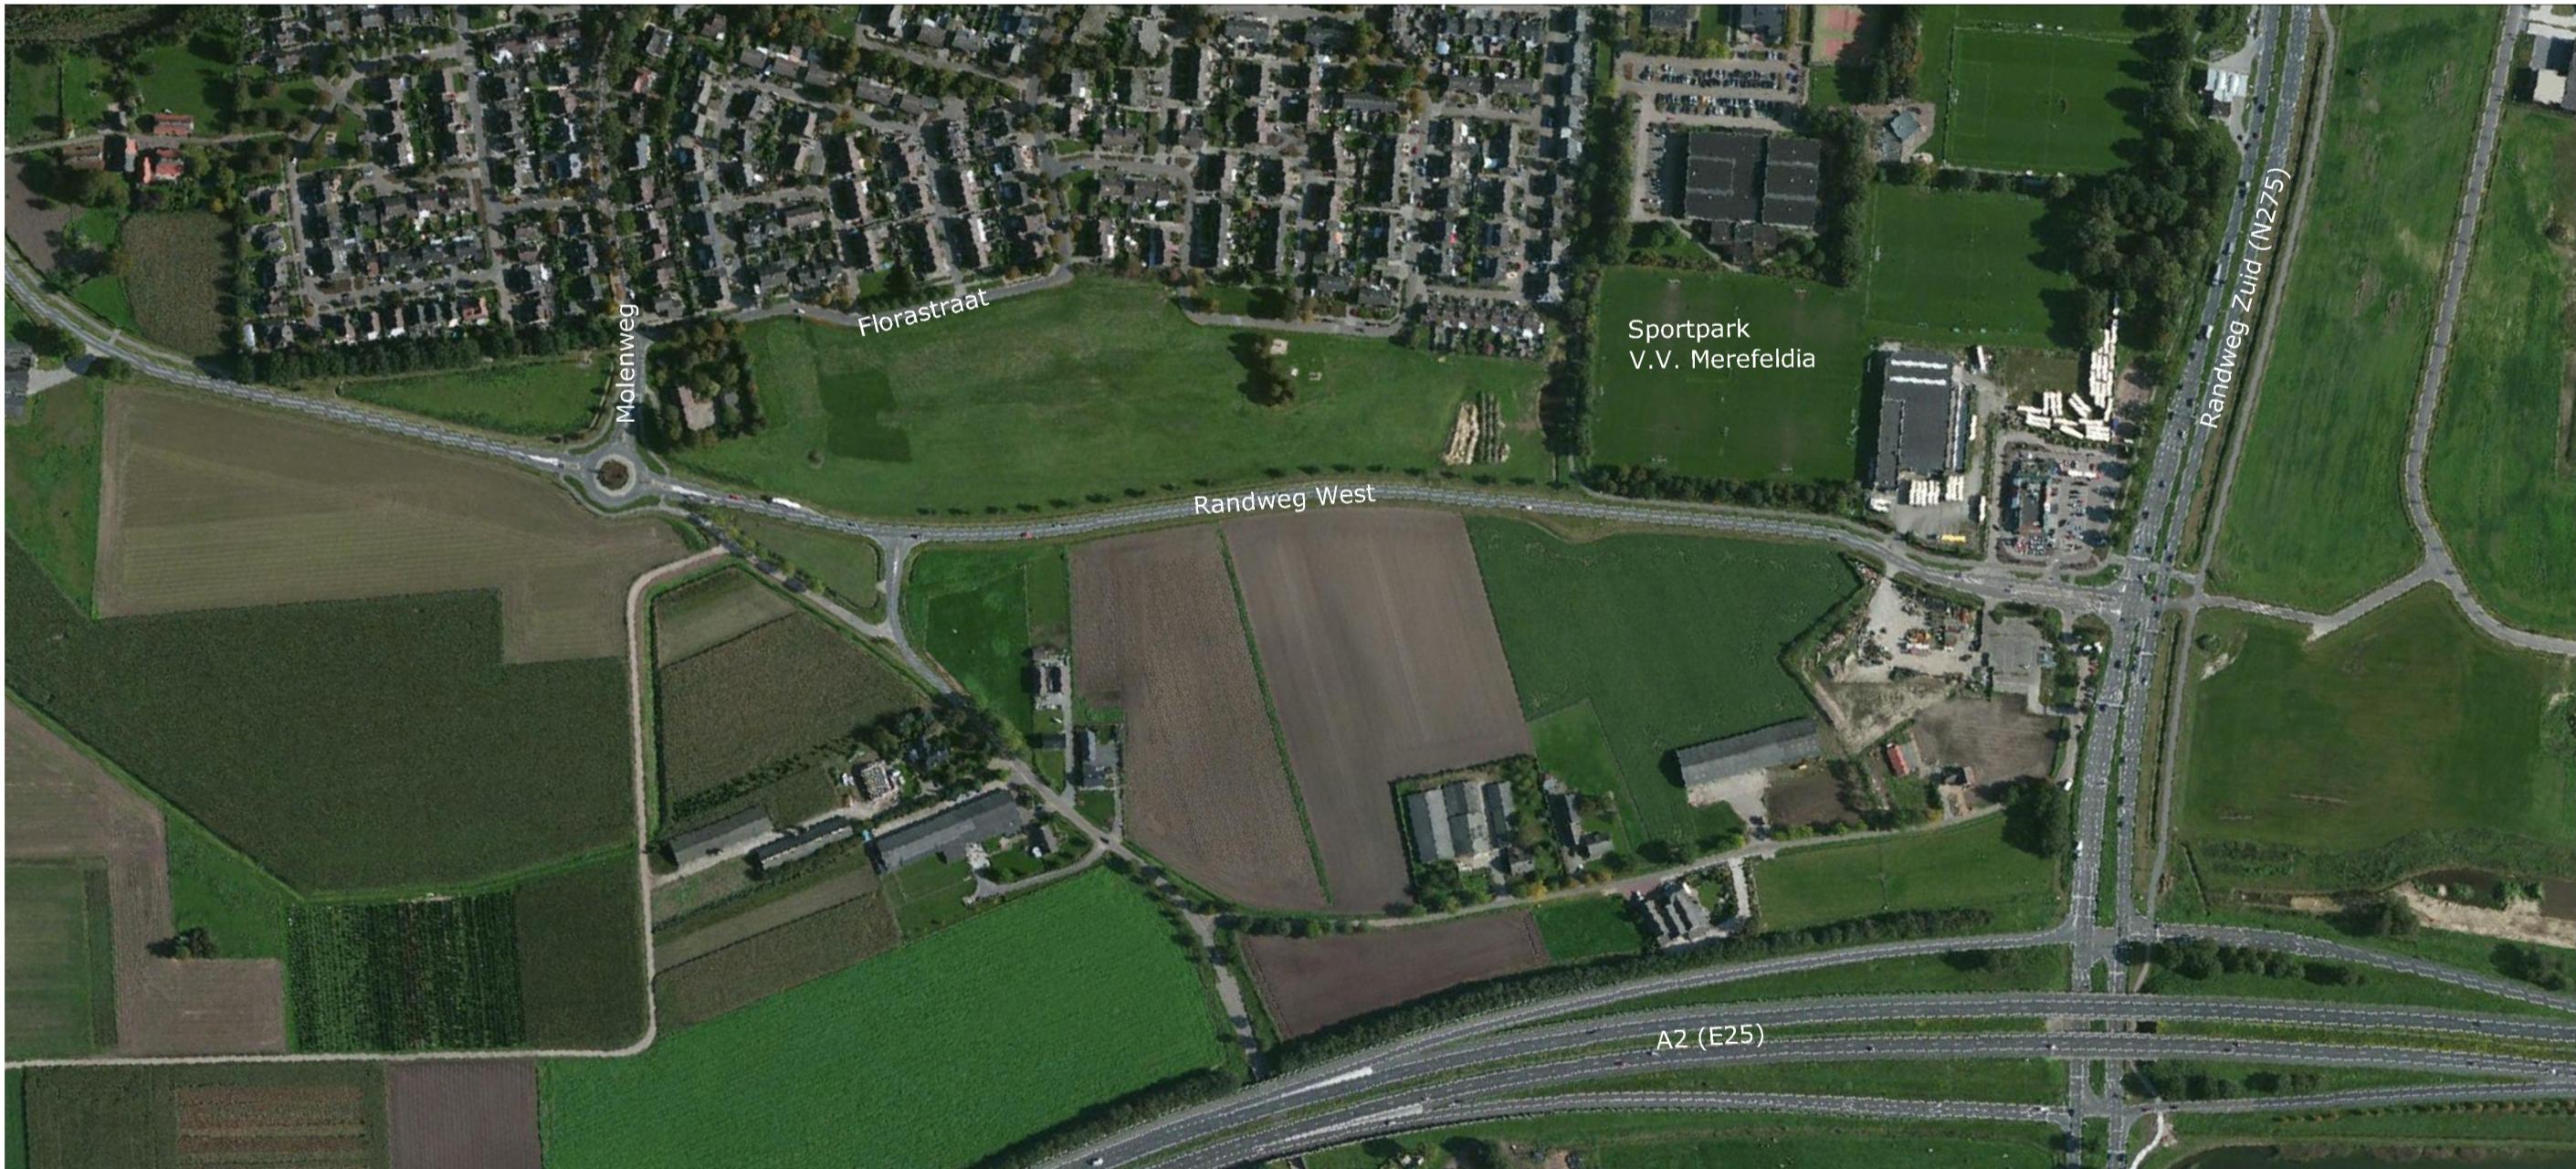 Afbeelding 1: Luchtfoto overzicht plangebied Plangebied Het plangebied voor het beleefpark is 4,5 hectare groot.